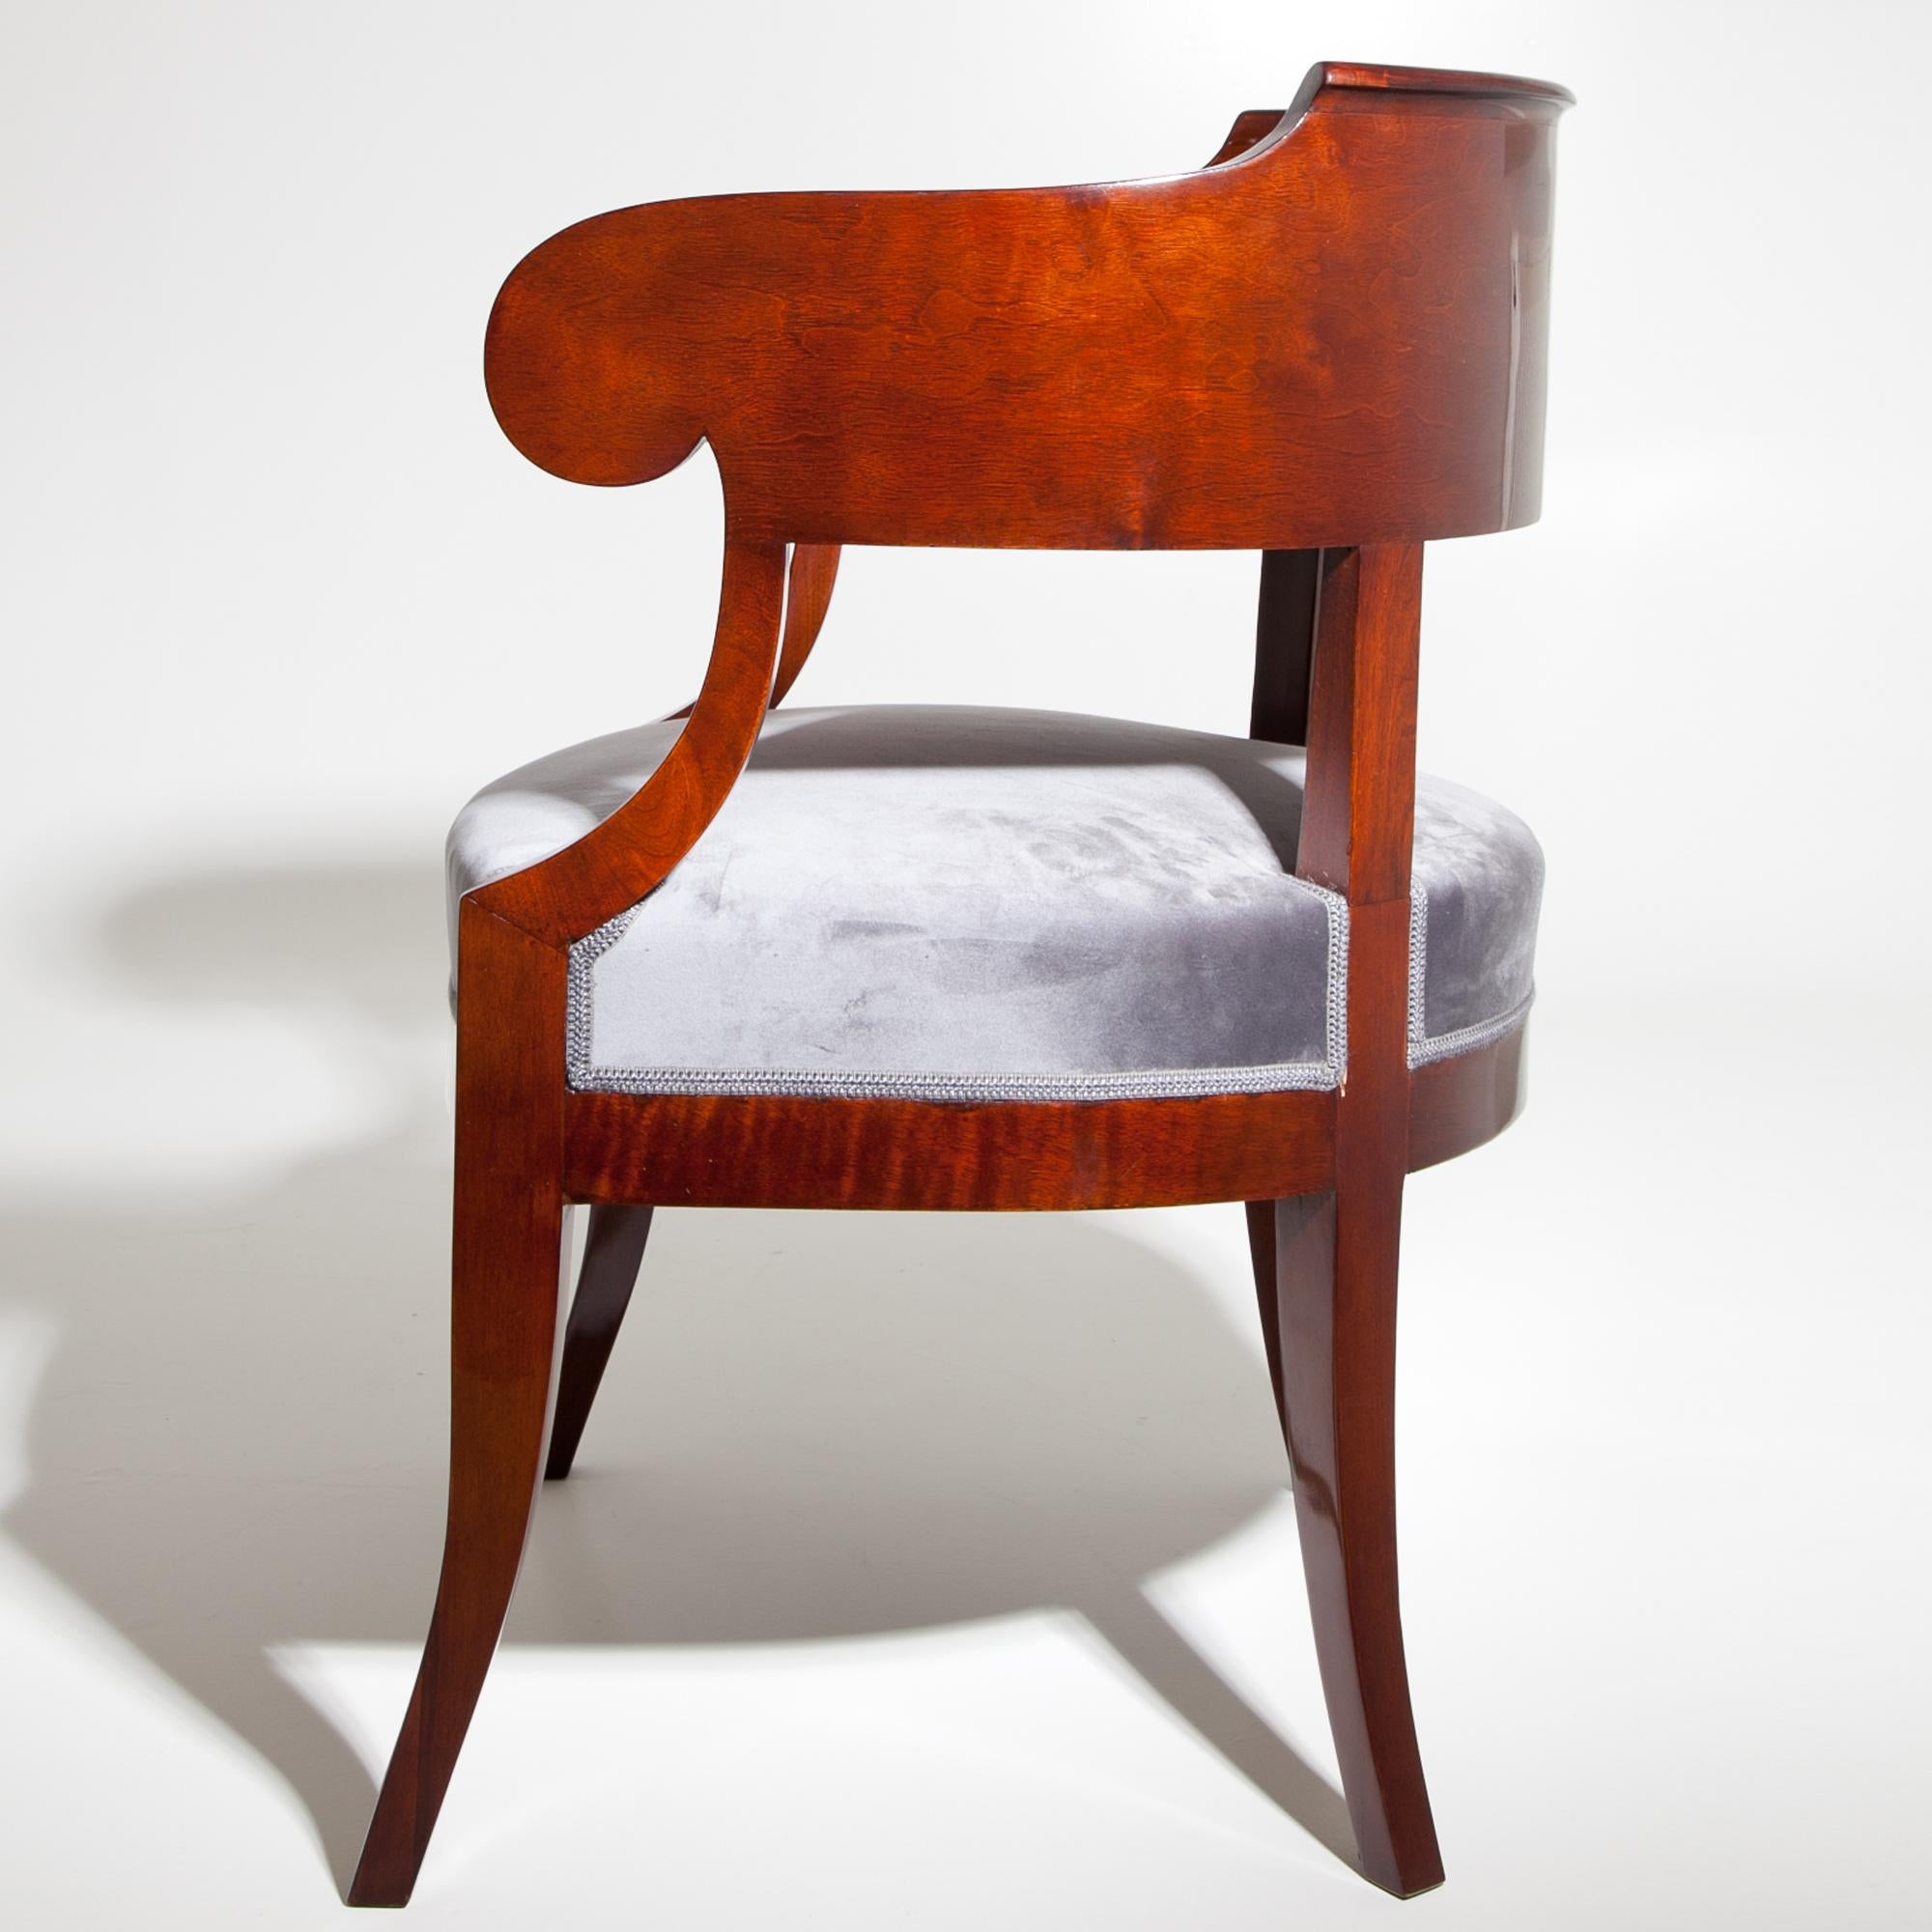 European Biedermeier Desk Chair, circa 1820